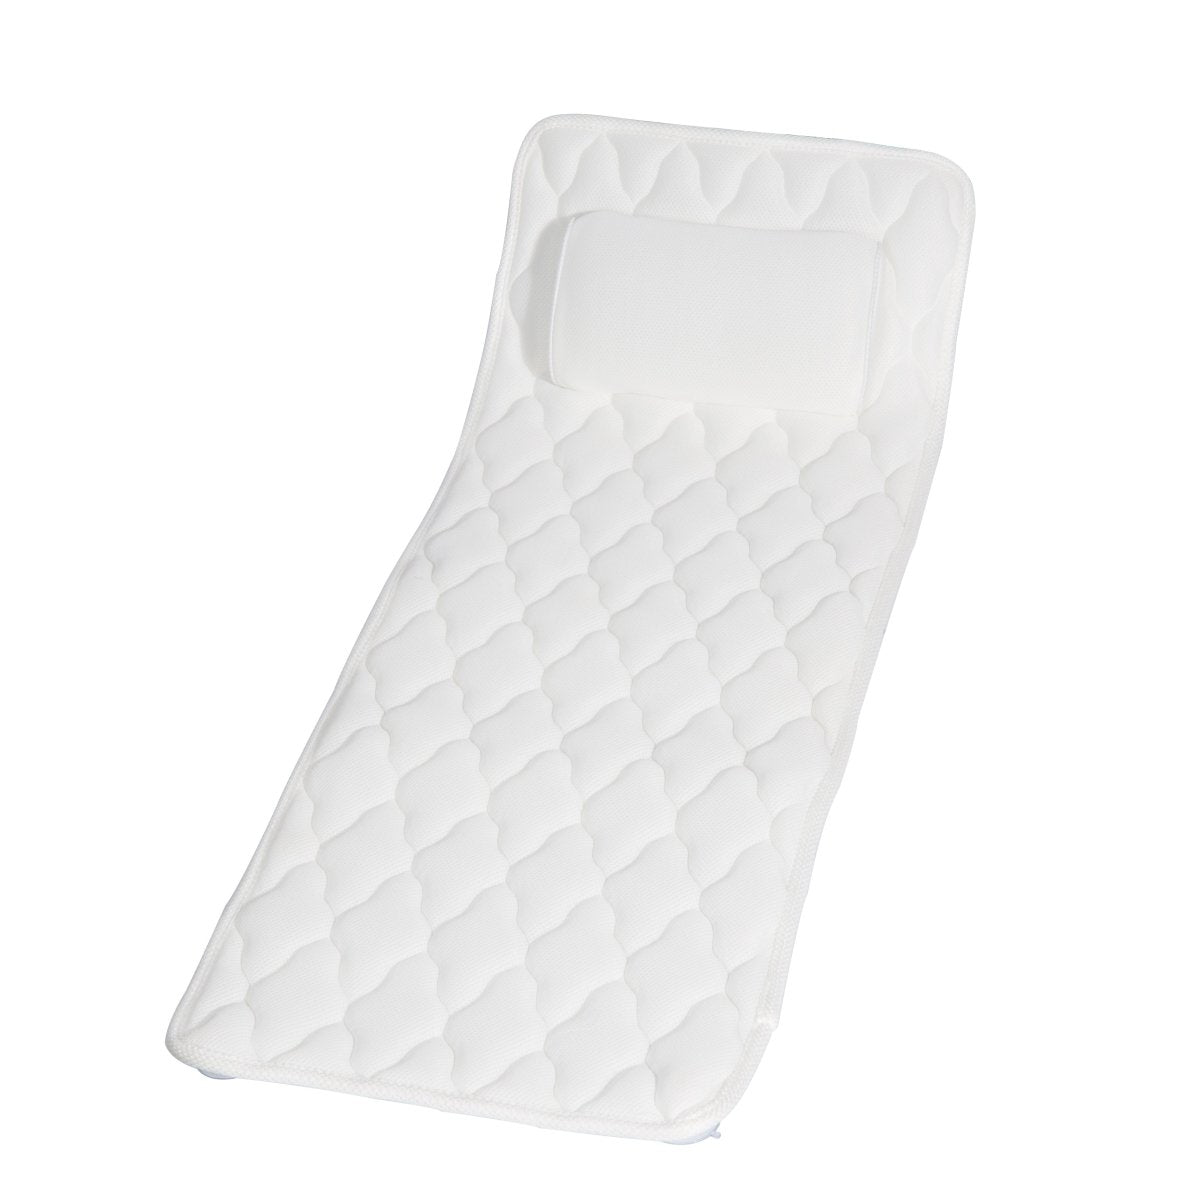 XL Bath Pillow Cushion Mat for Bathtub by Bath Box Australia